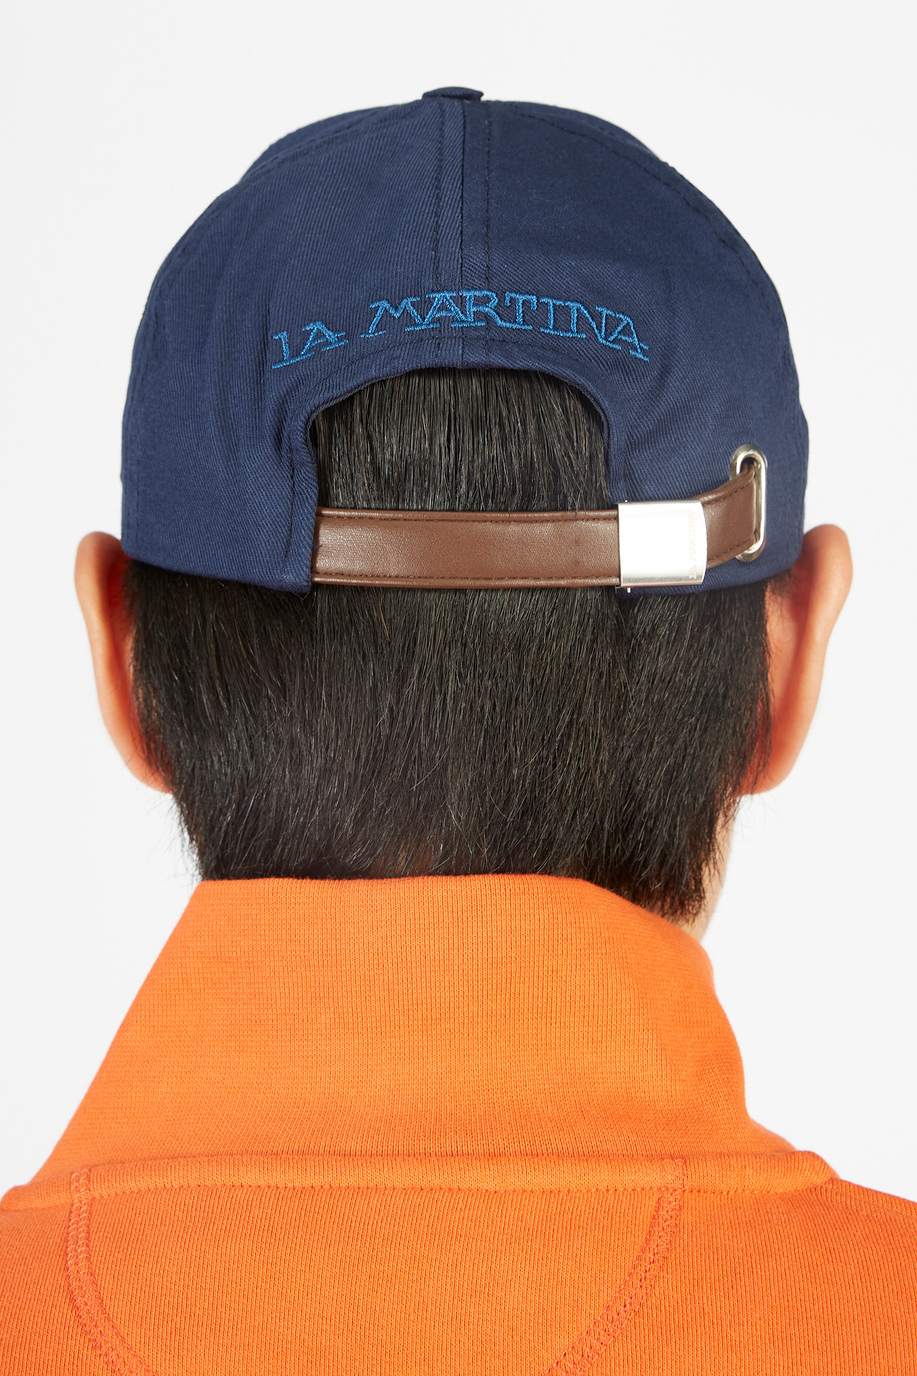 Casquette de baseball unisexe avec fermeture ajustable - Cadeaux avec monogramme pour lui | La Martina - Official Online Shop